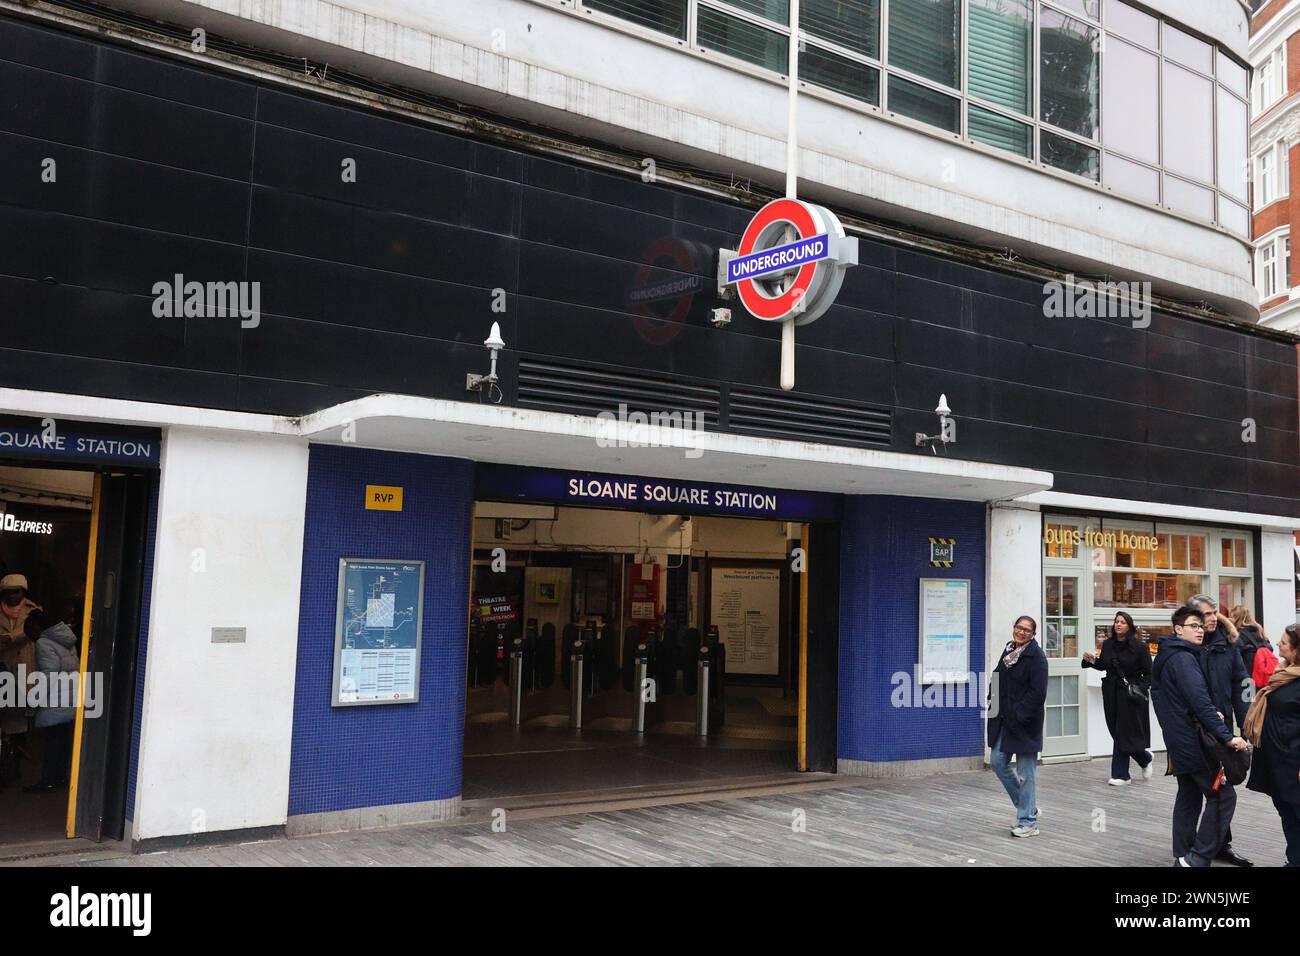 Sloane Square London Underground Station Stock Photo